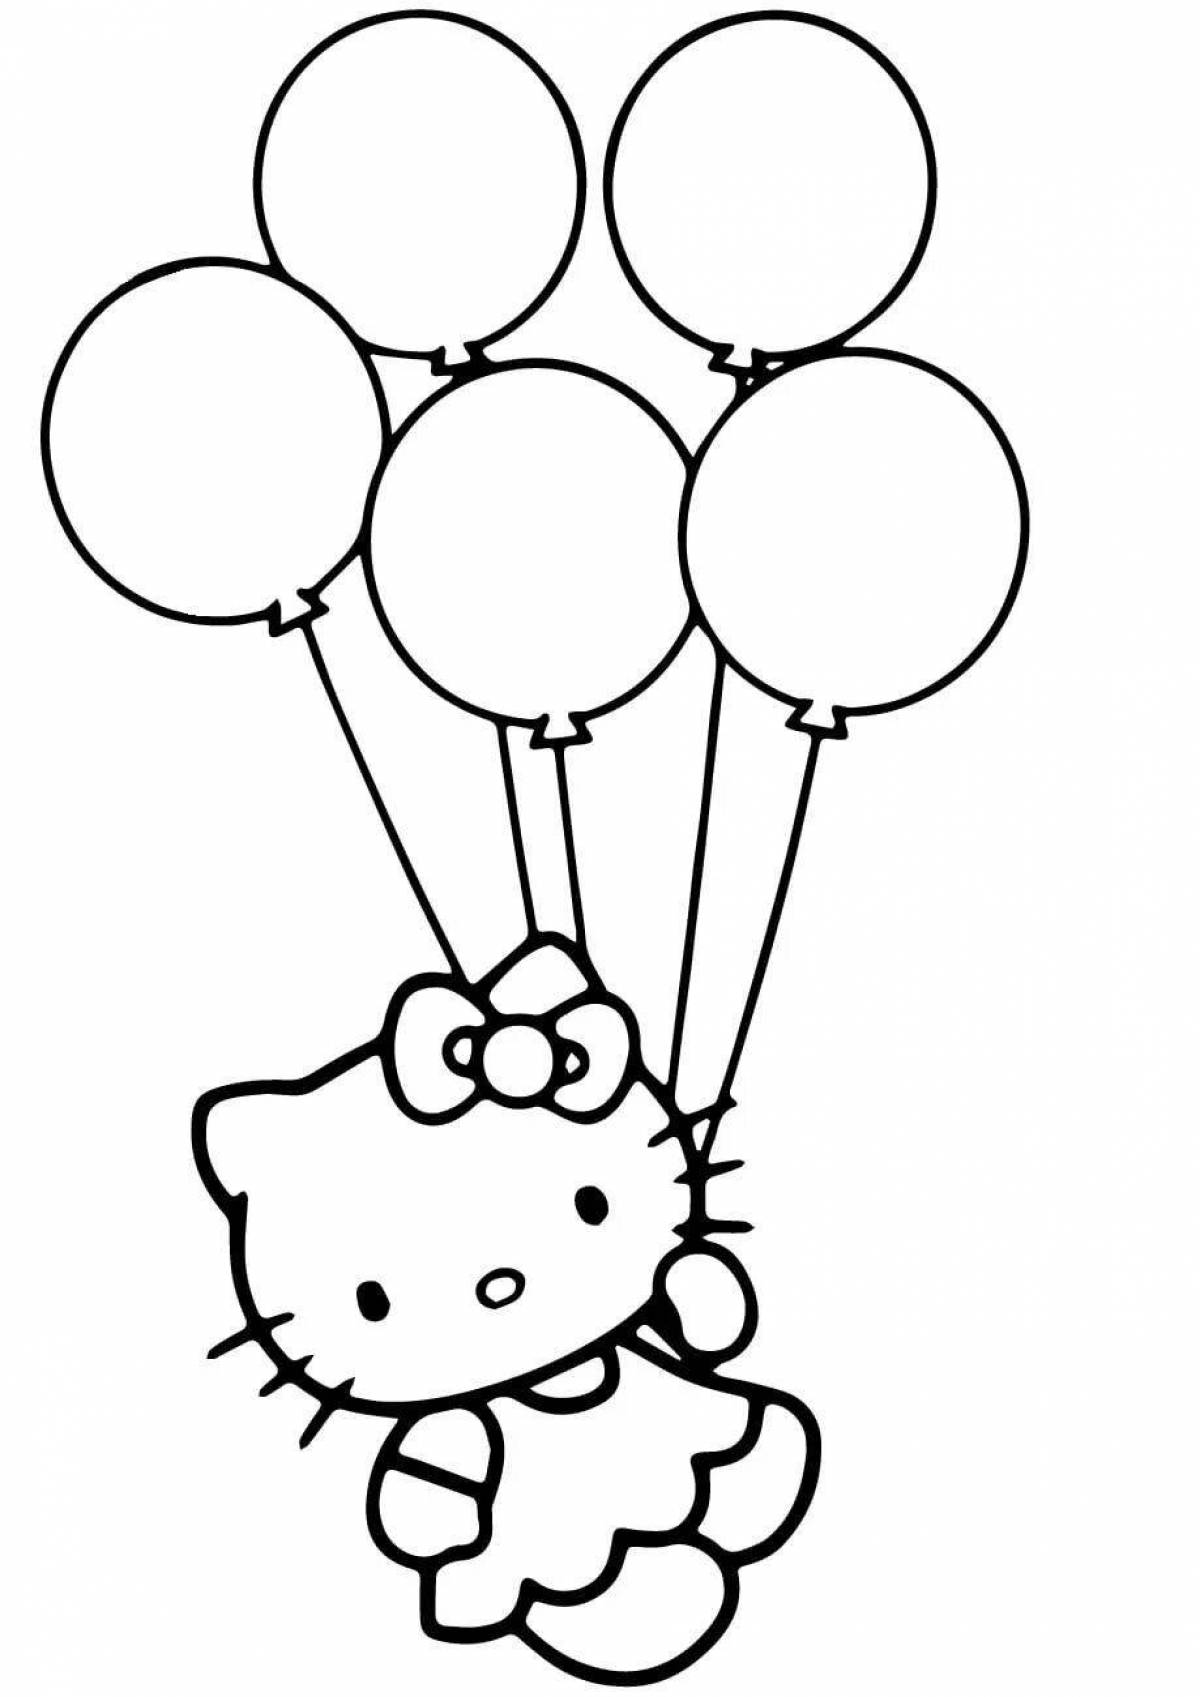 Веселая раскраска с воздушными шарами для детей